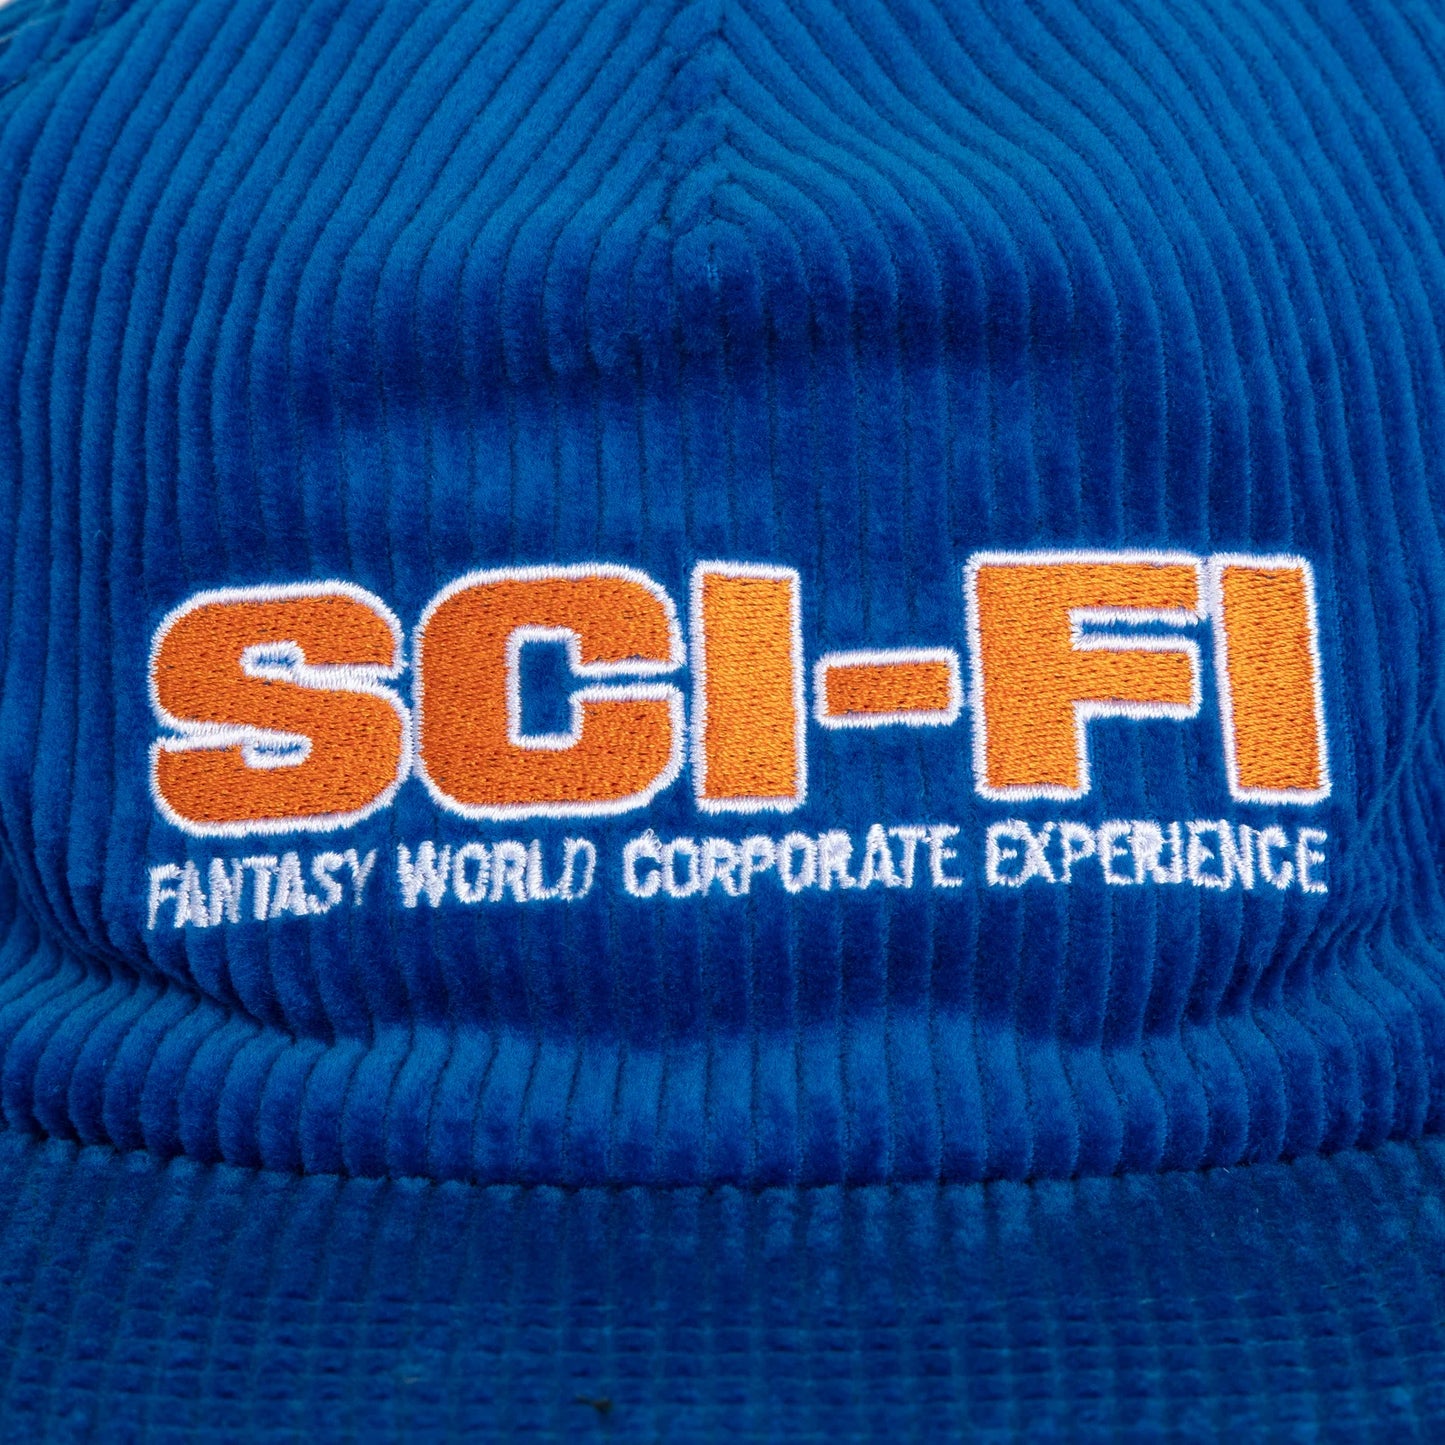 Sci-Fi Corporate Experience Hat Blue